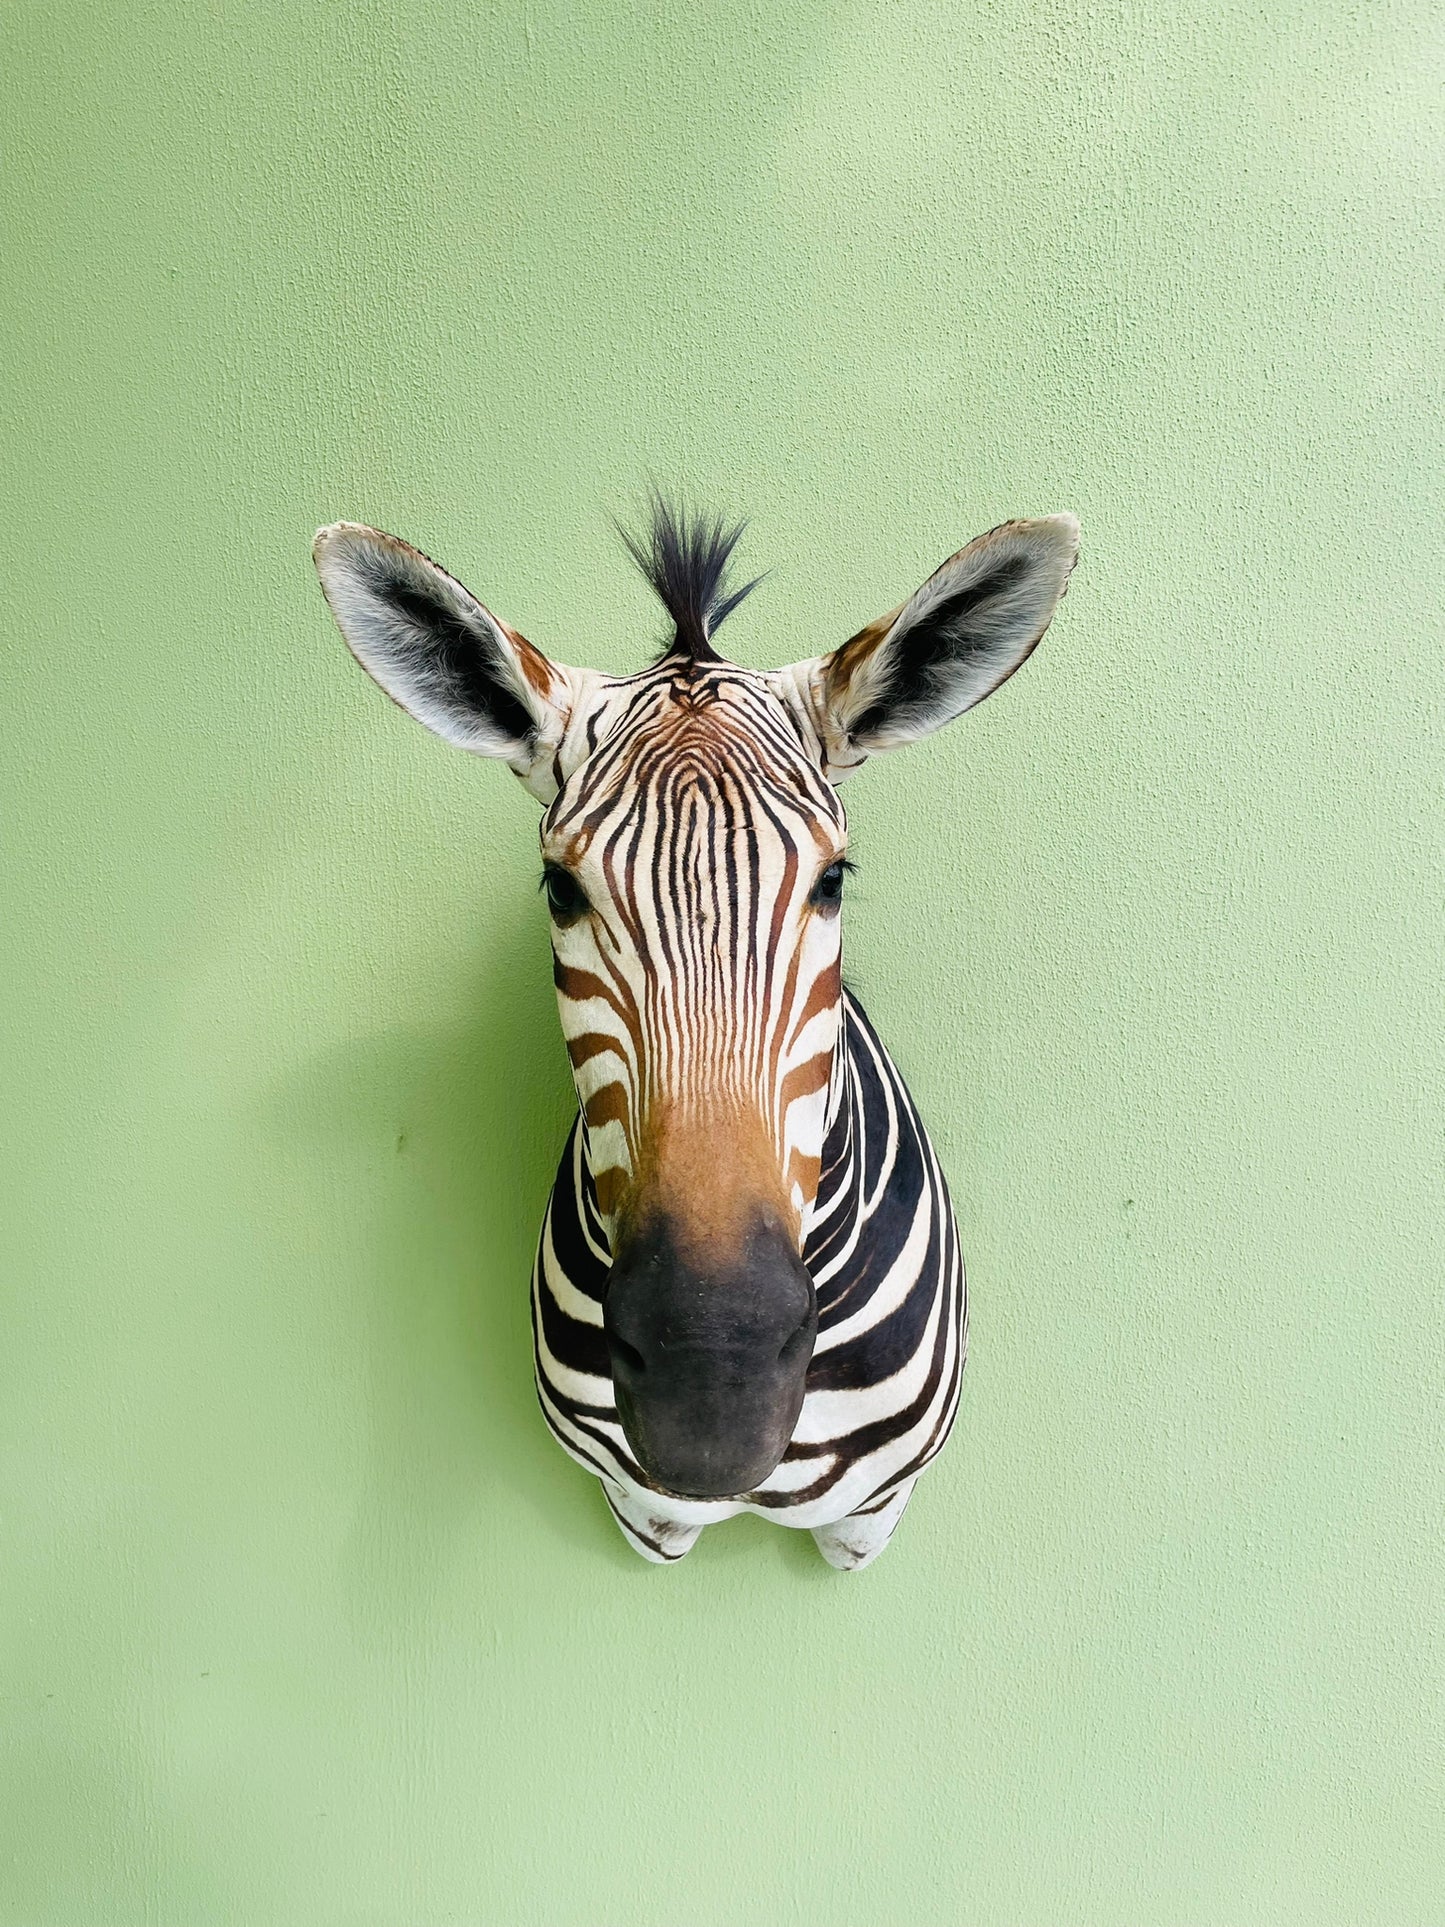 Giant taxidermy zebra head